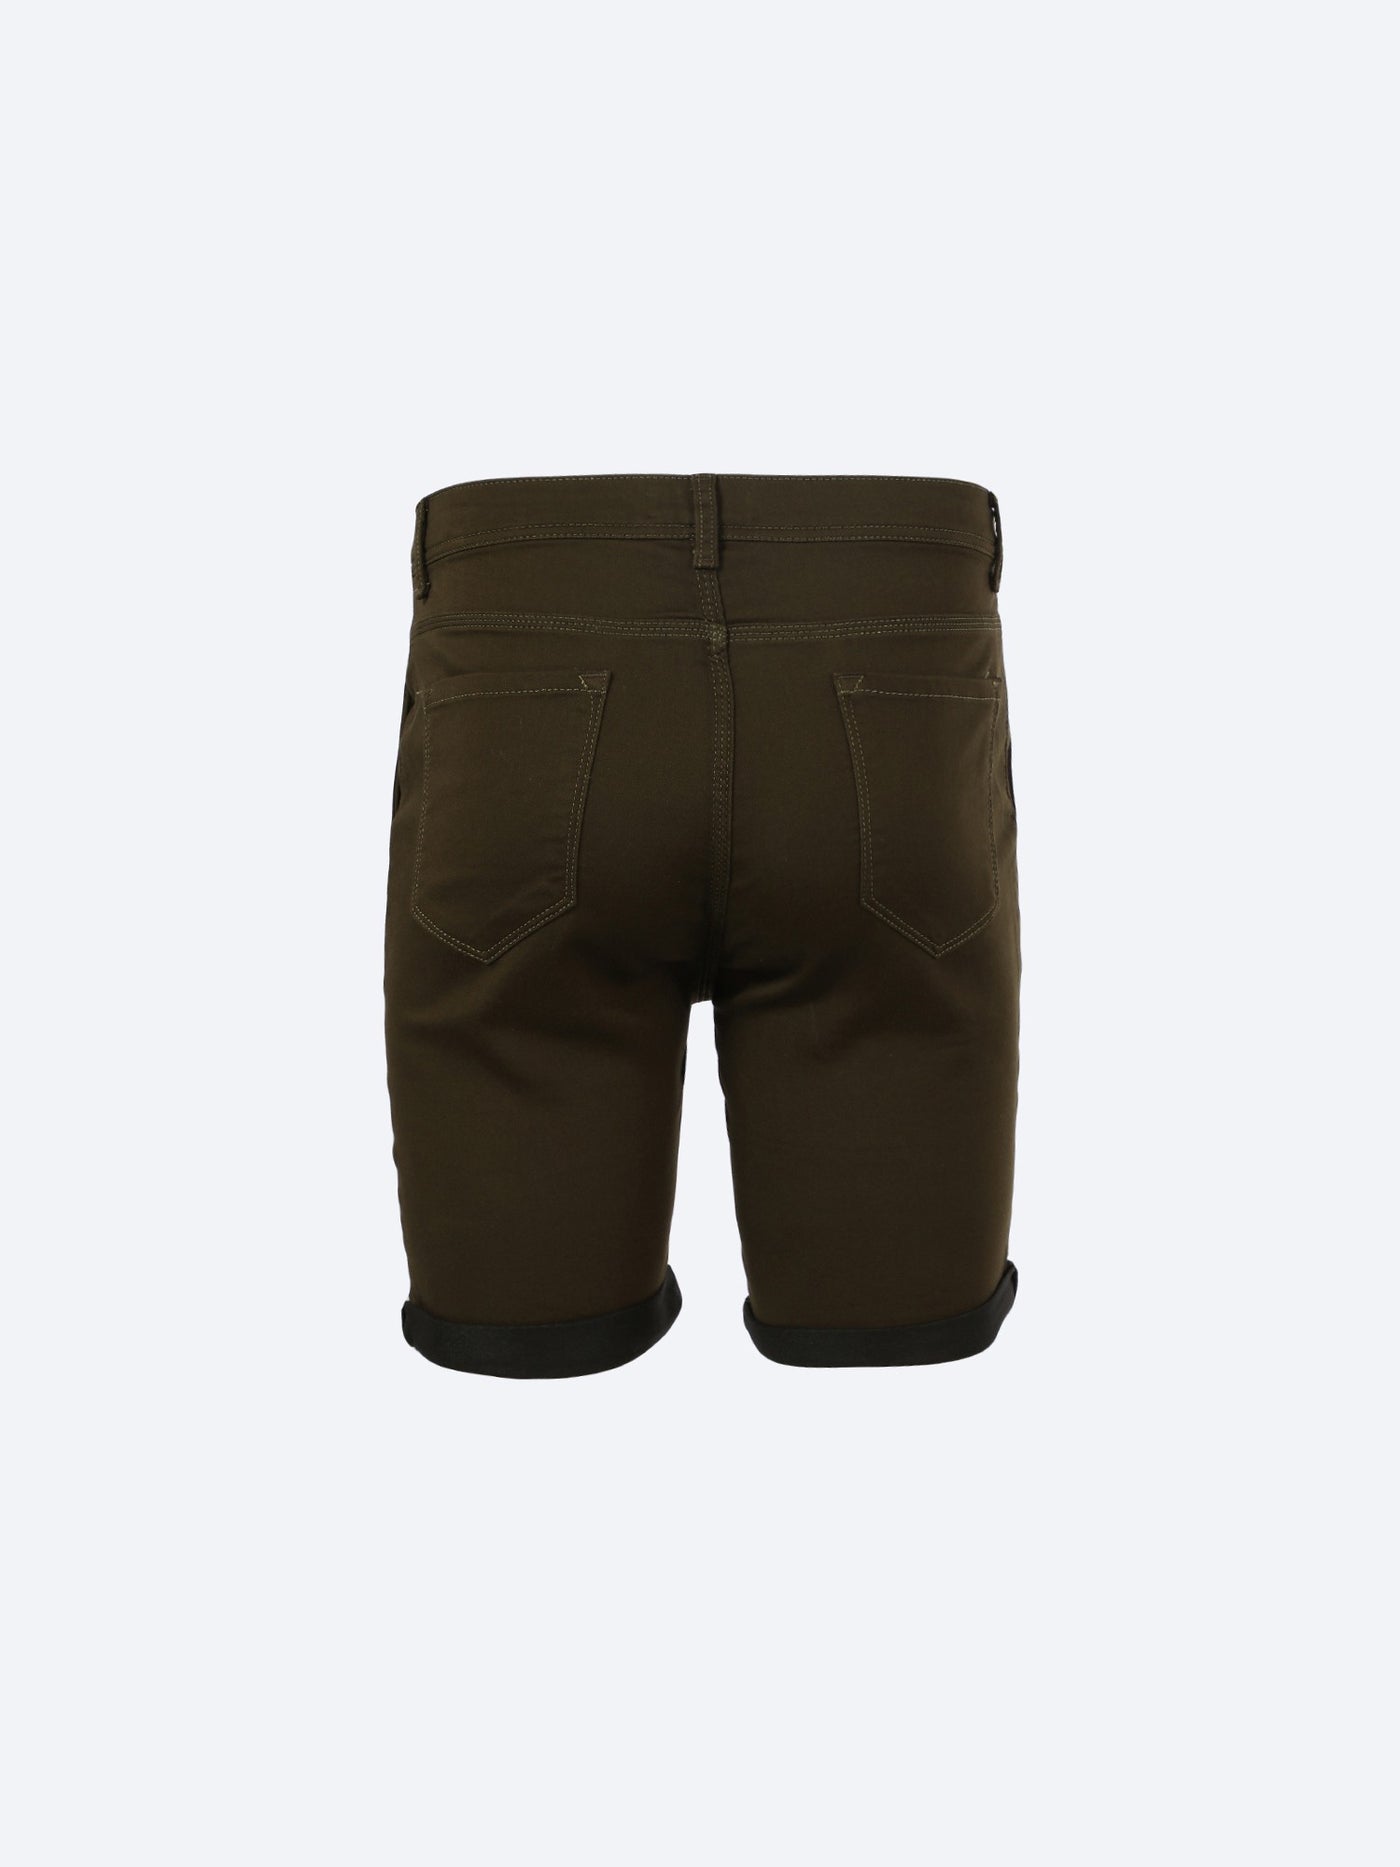 Shorts - Pocketed - Folded Hems